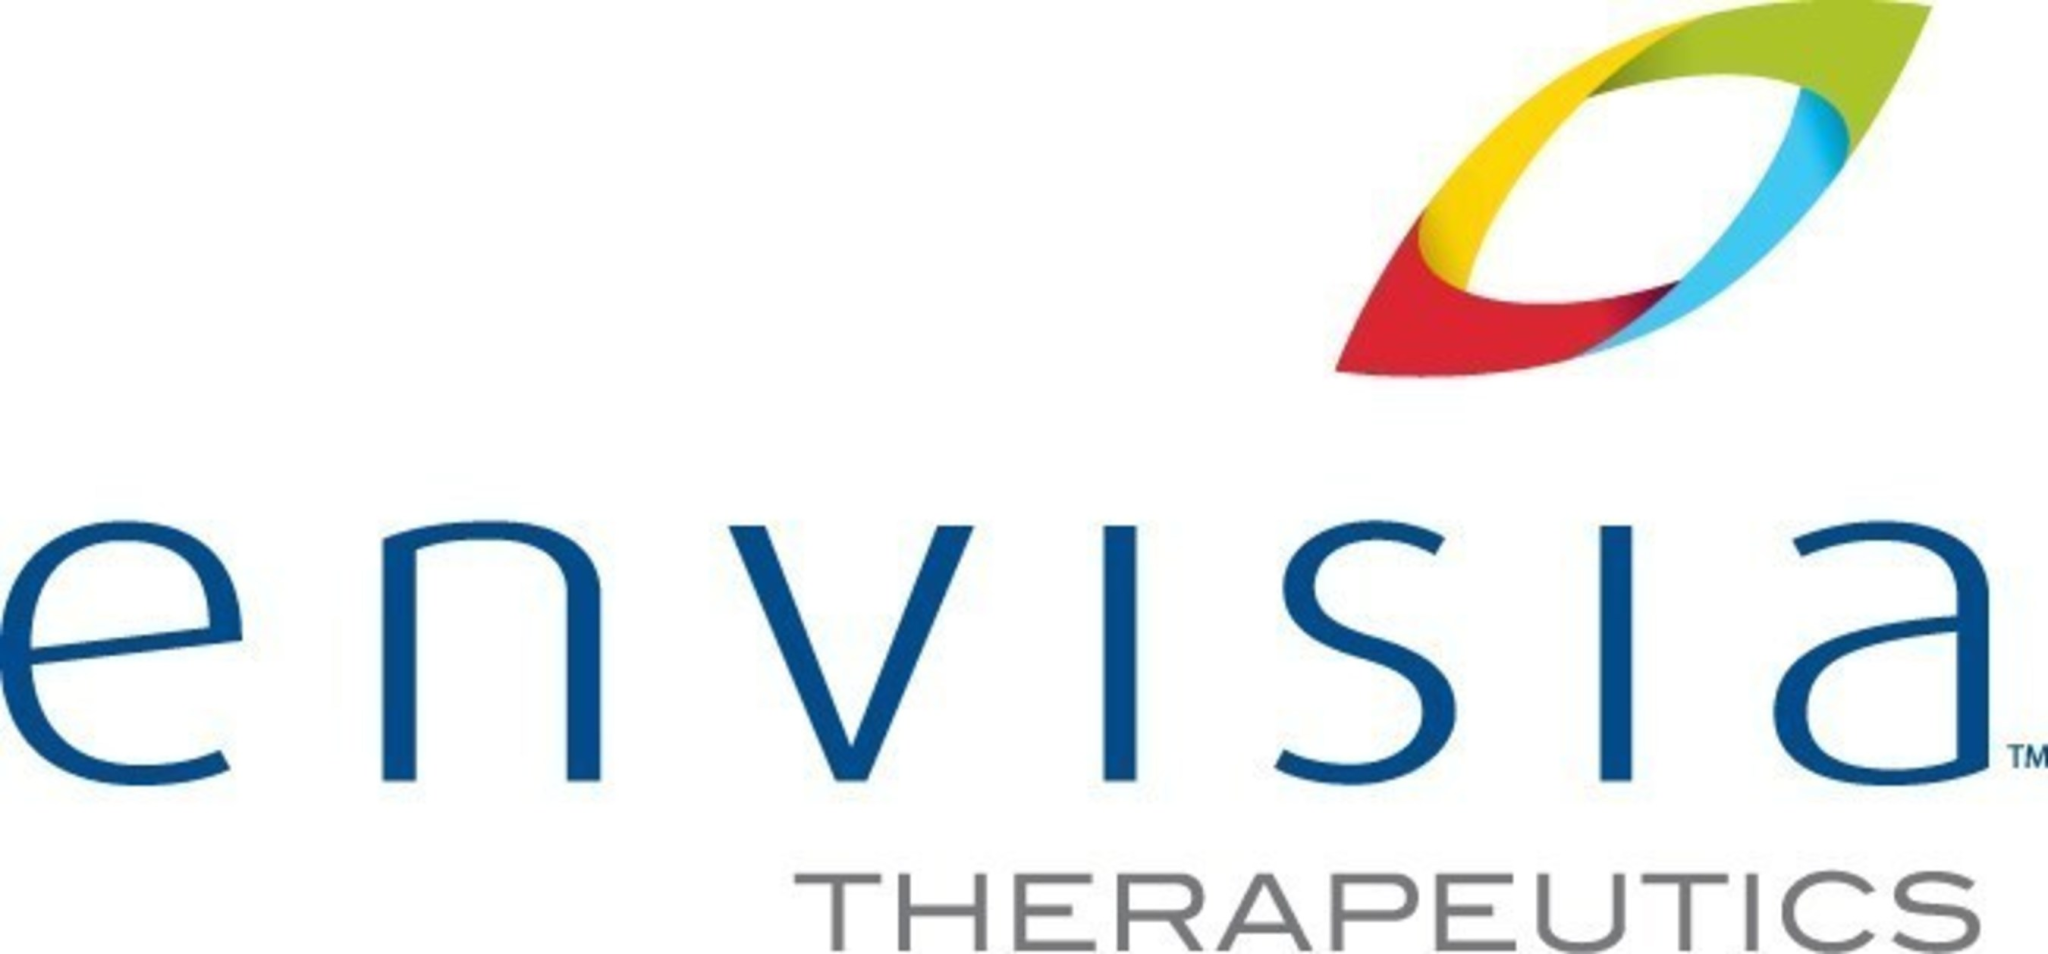 Envisia Therapeutics